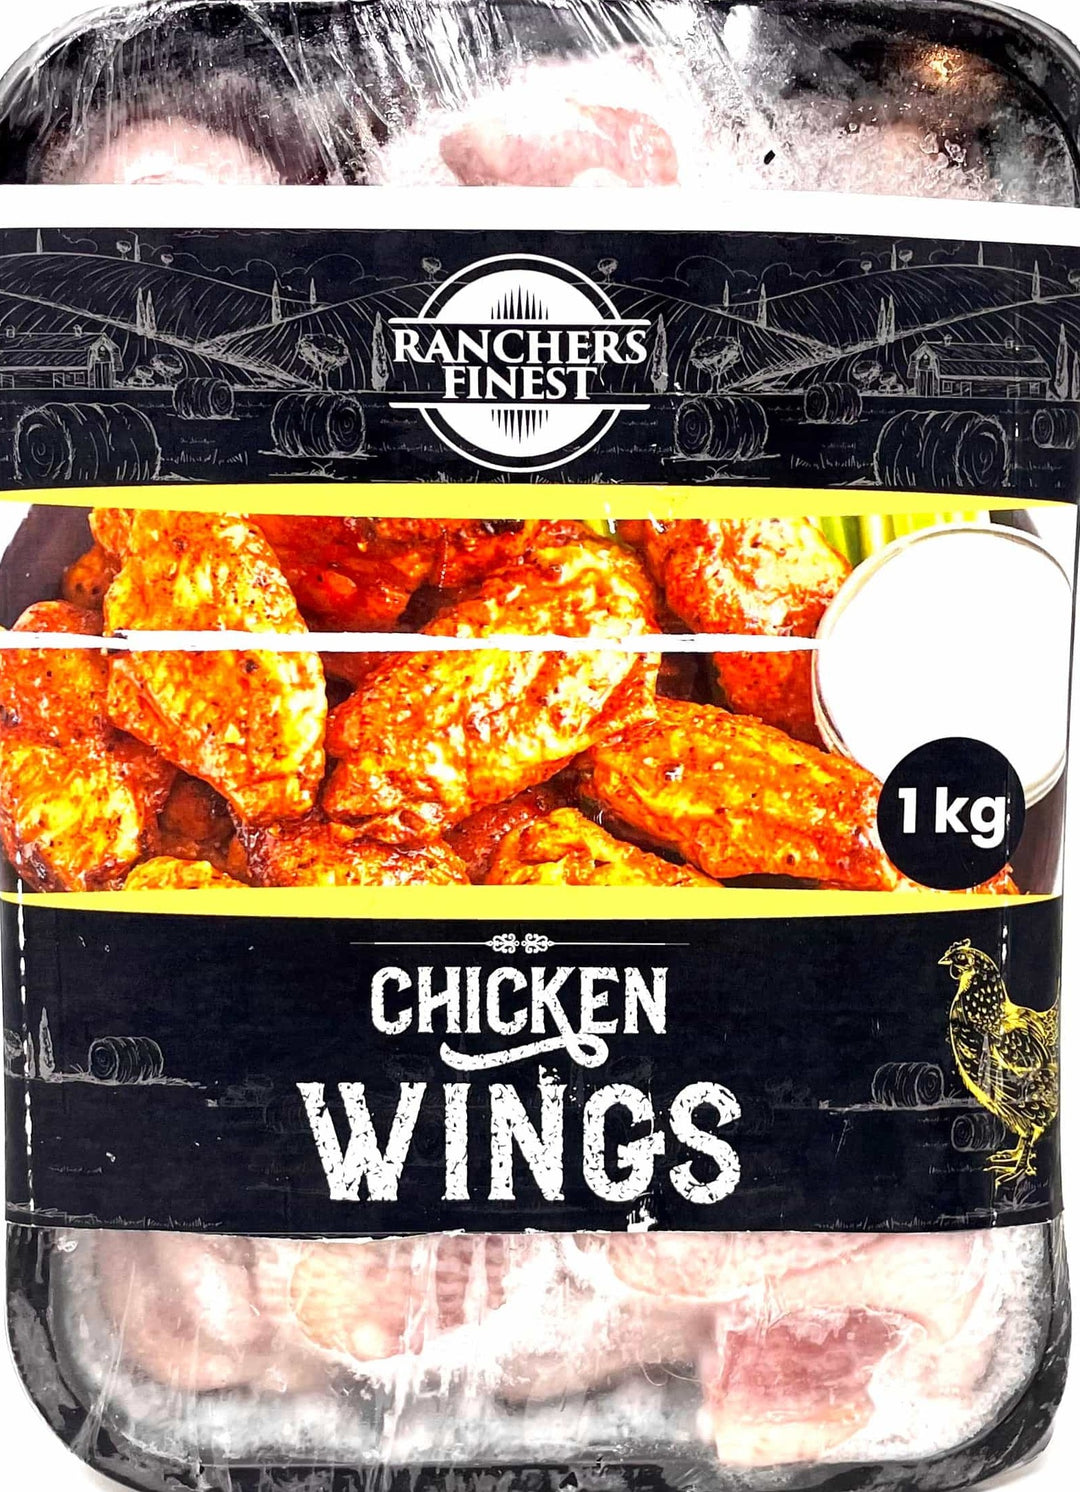 Ranchers Finest Chicken Wings (Frozen) 1kg